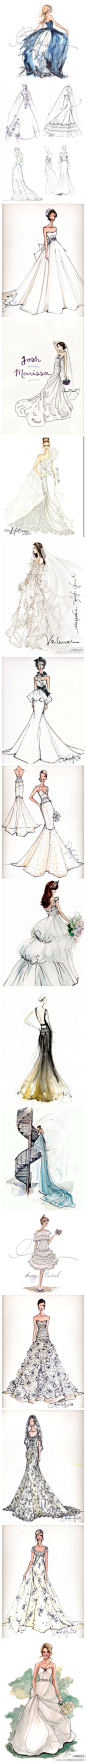 16款婚纱草图，全部都好美哦！~ 你喜欢哪一款？